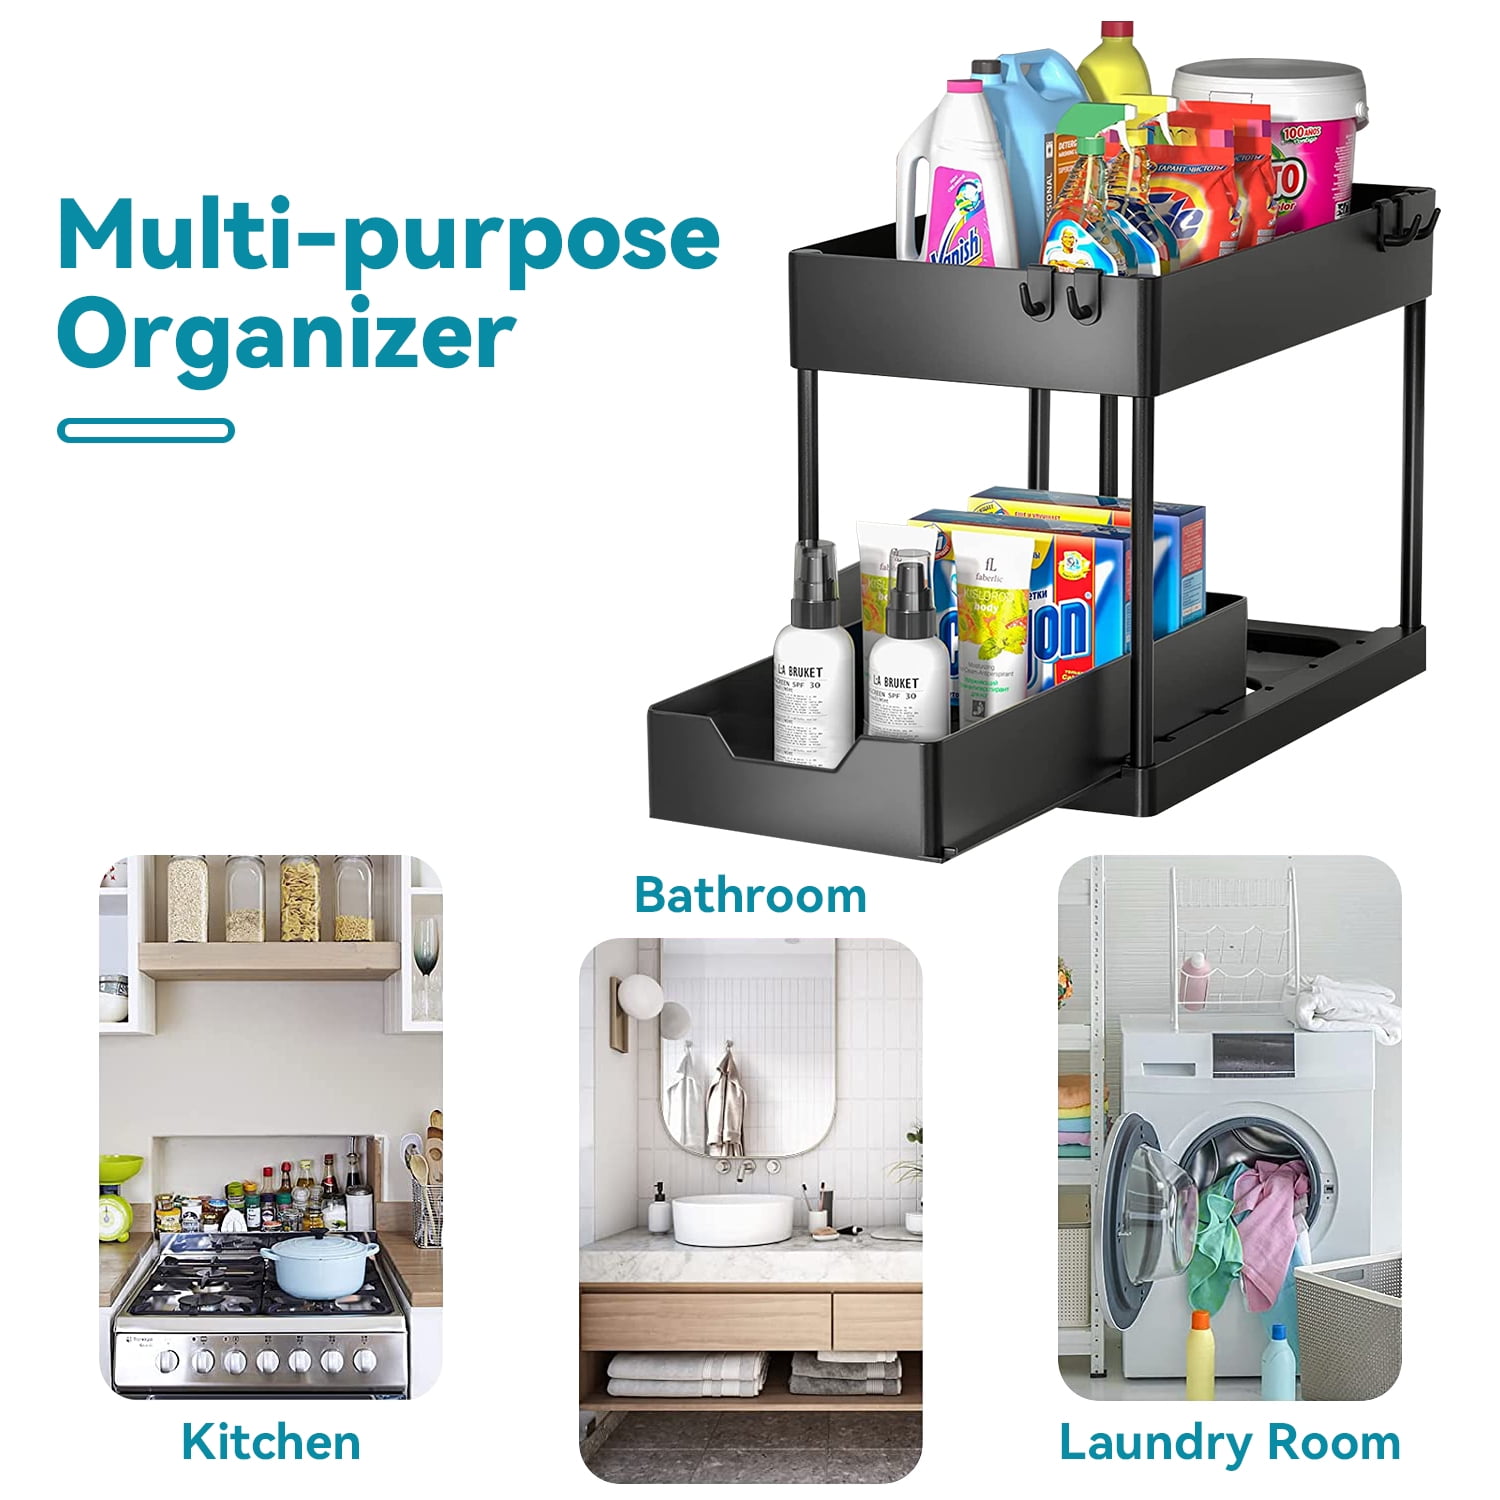 MEAFBIRD 2 Pack Under Sink Organizer, 2 Tier Bathroom Cabinet Organizer  with Sliding Basket, Multi-Purpose Under Sink Organizers and Storage for